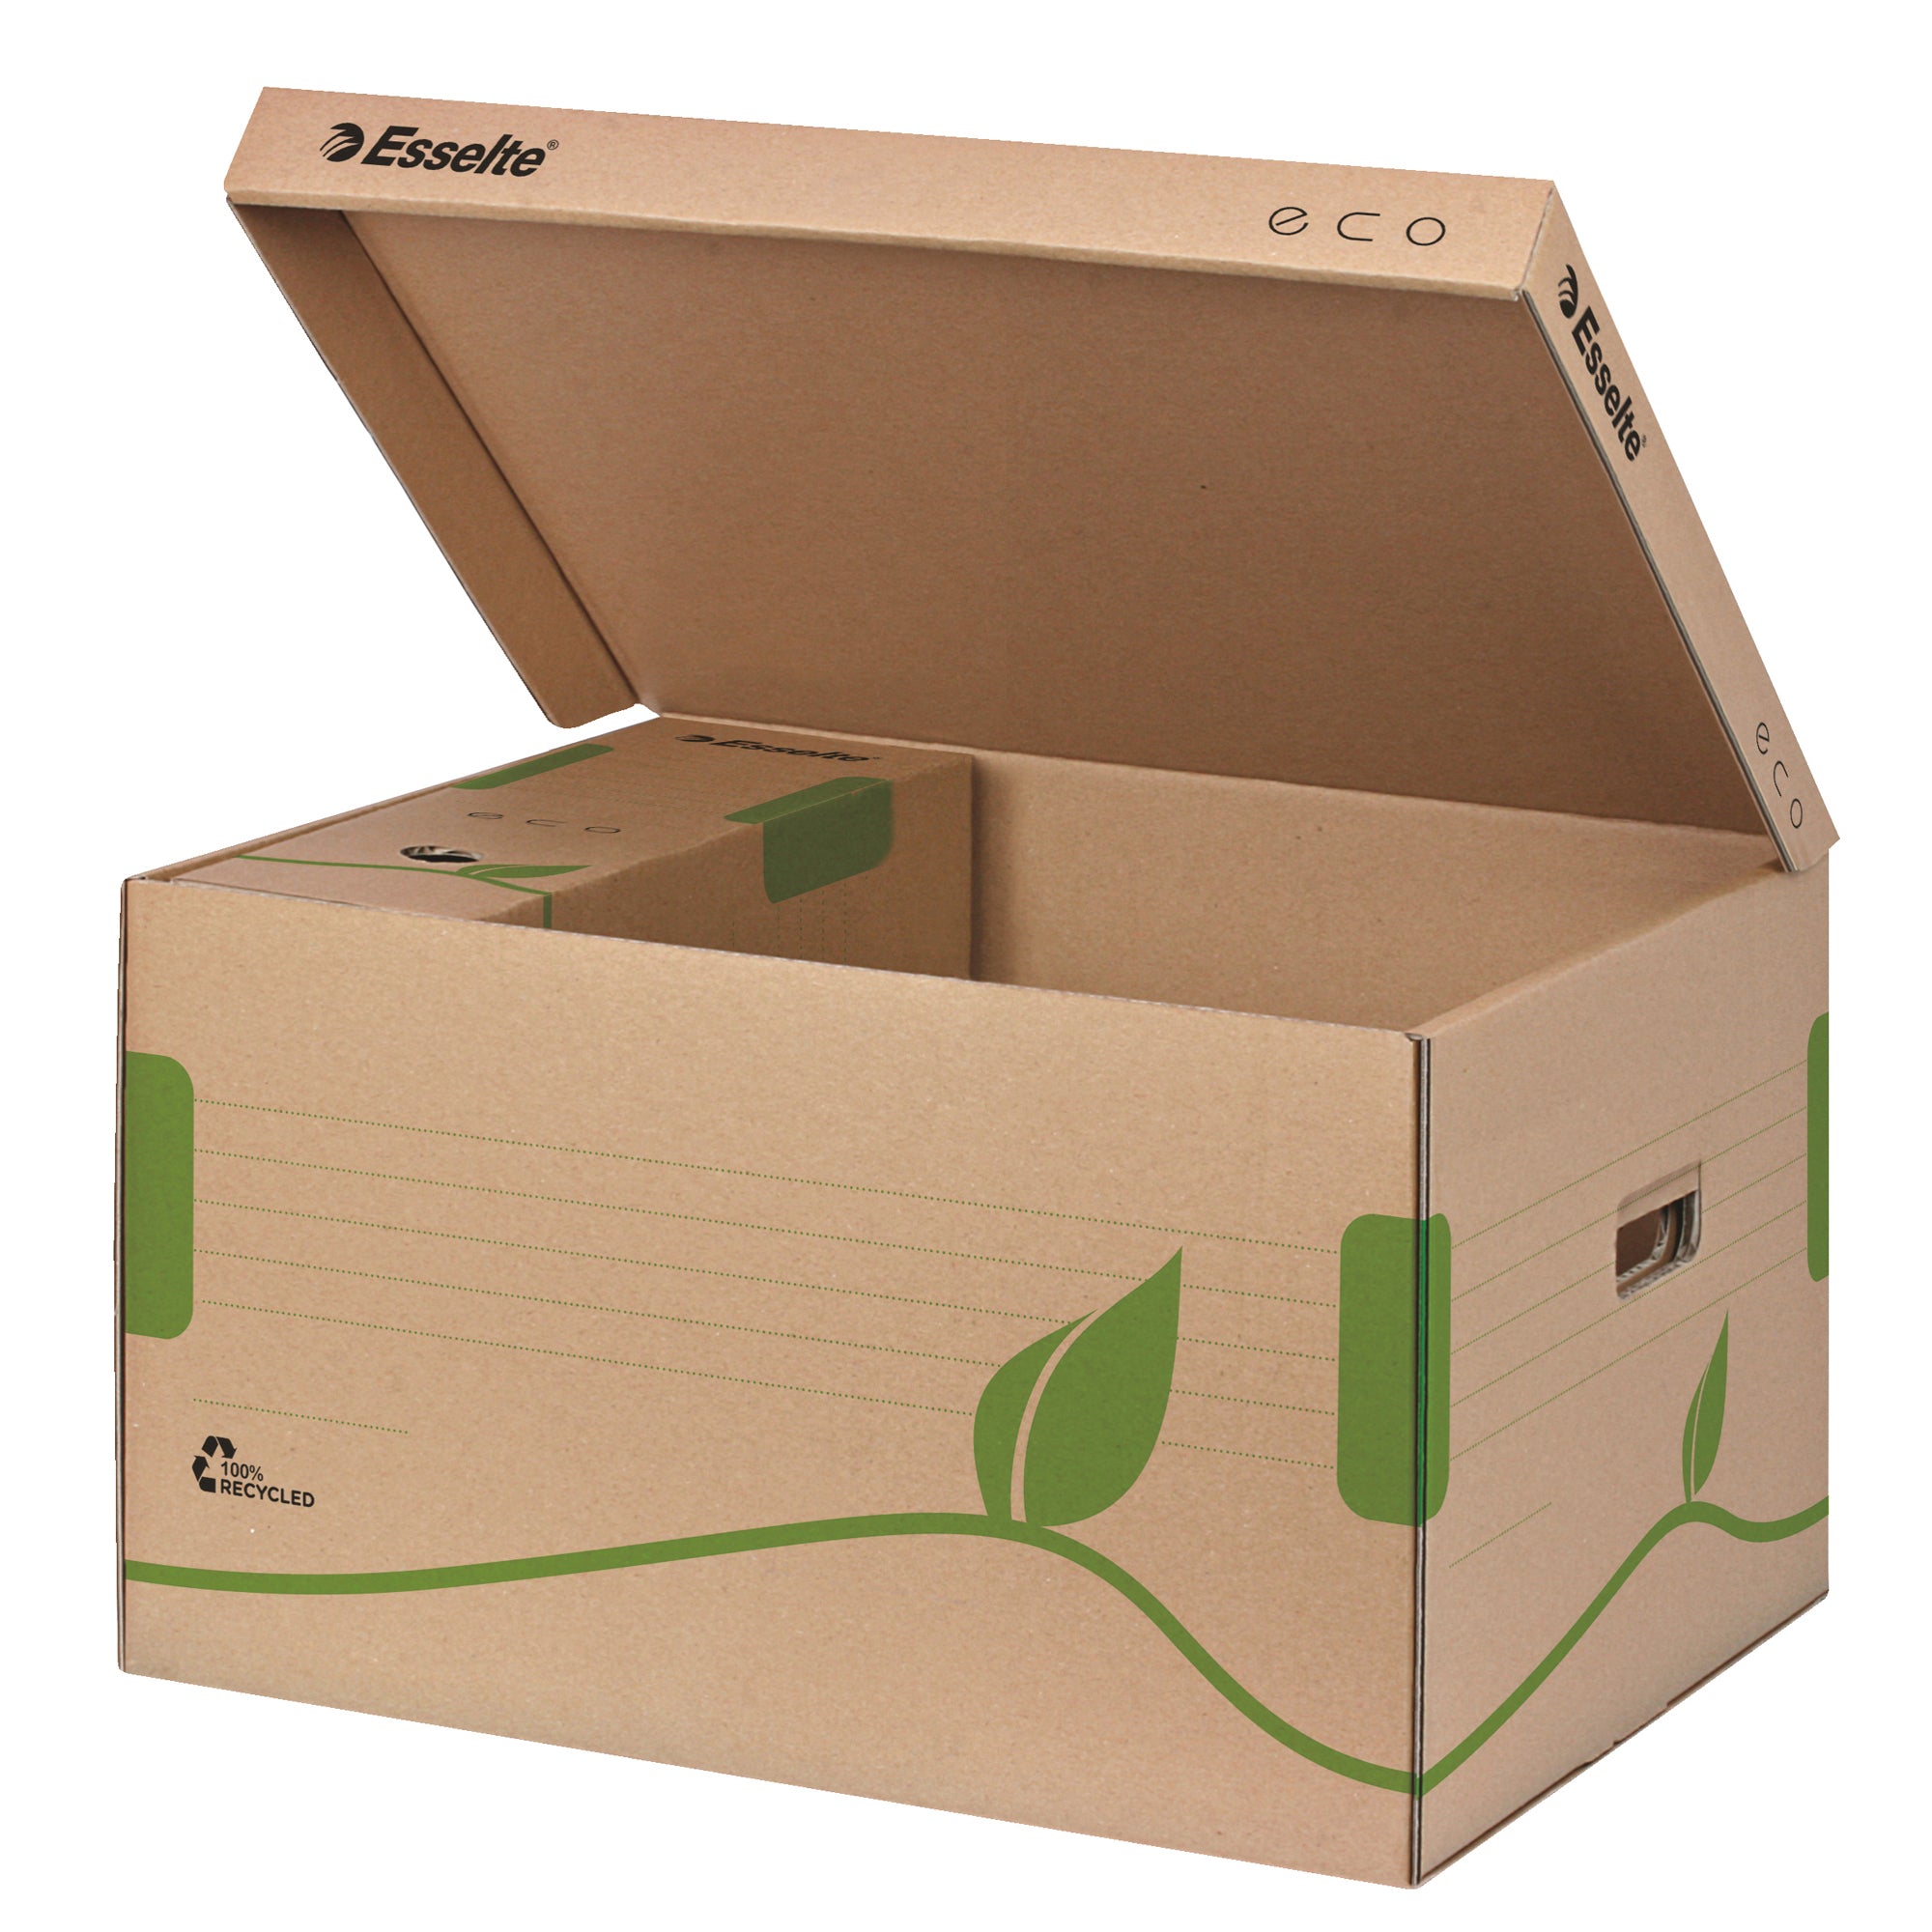 esselte-scatola-container-ecobox-345x439x242mm-apertura-superiore